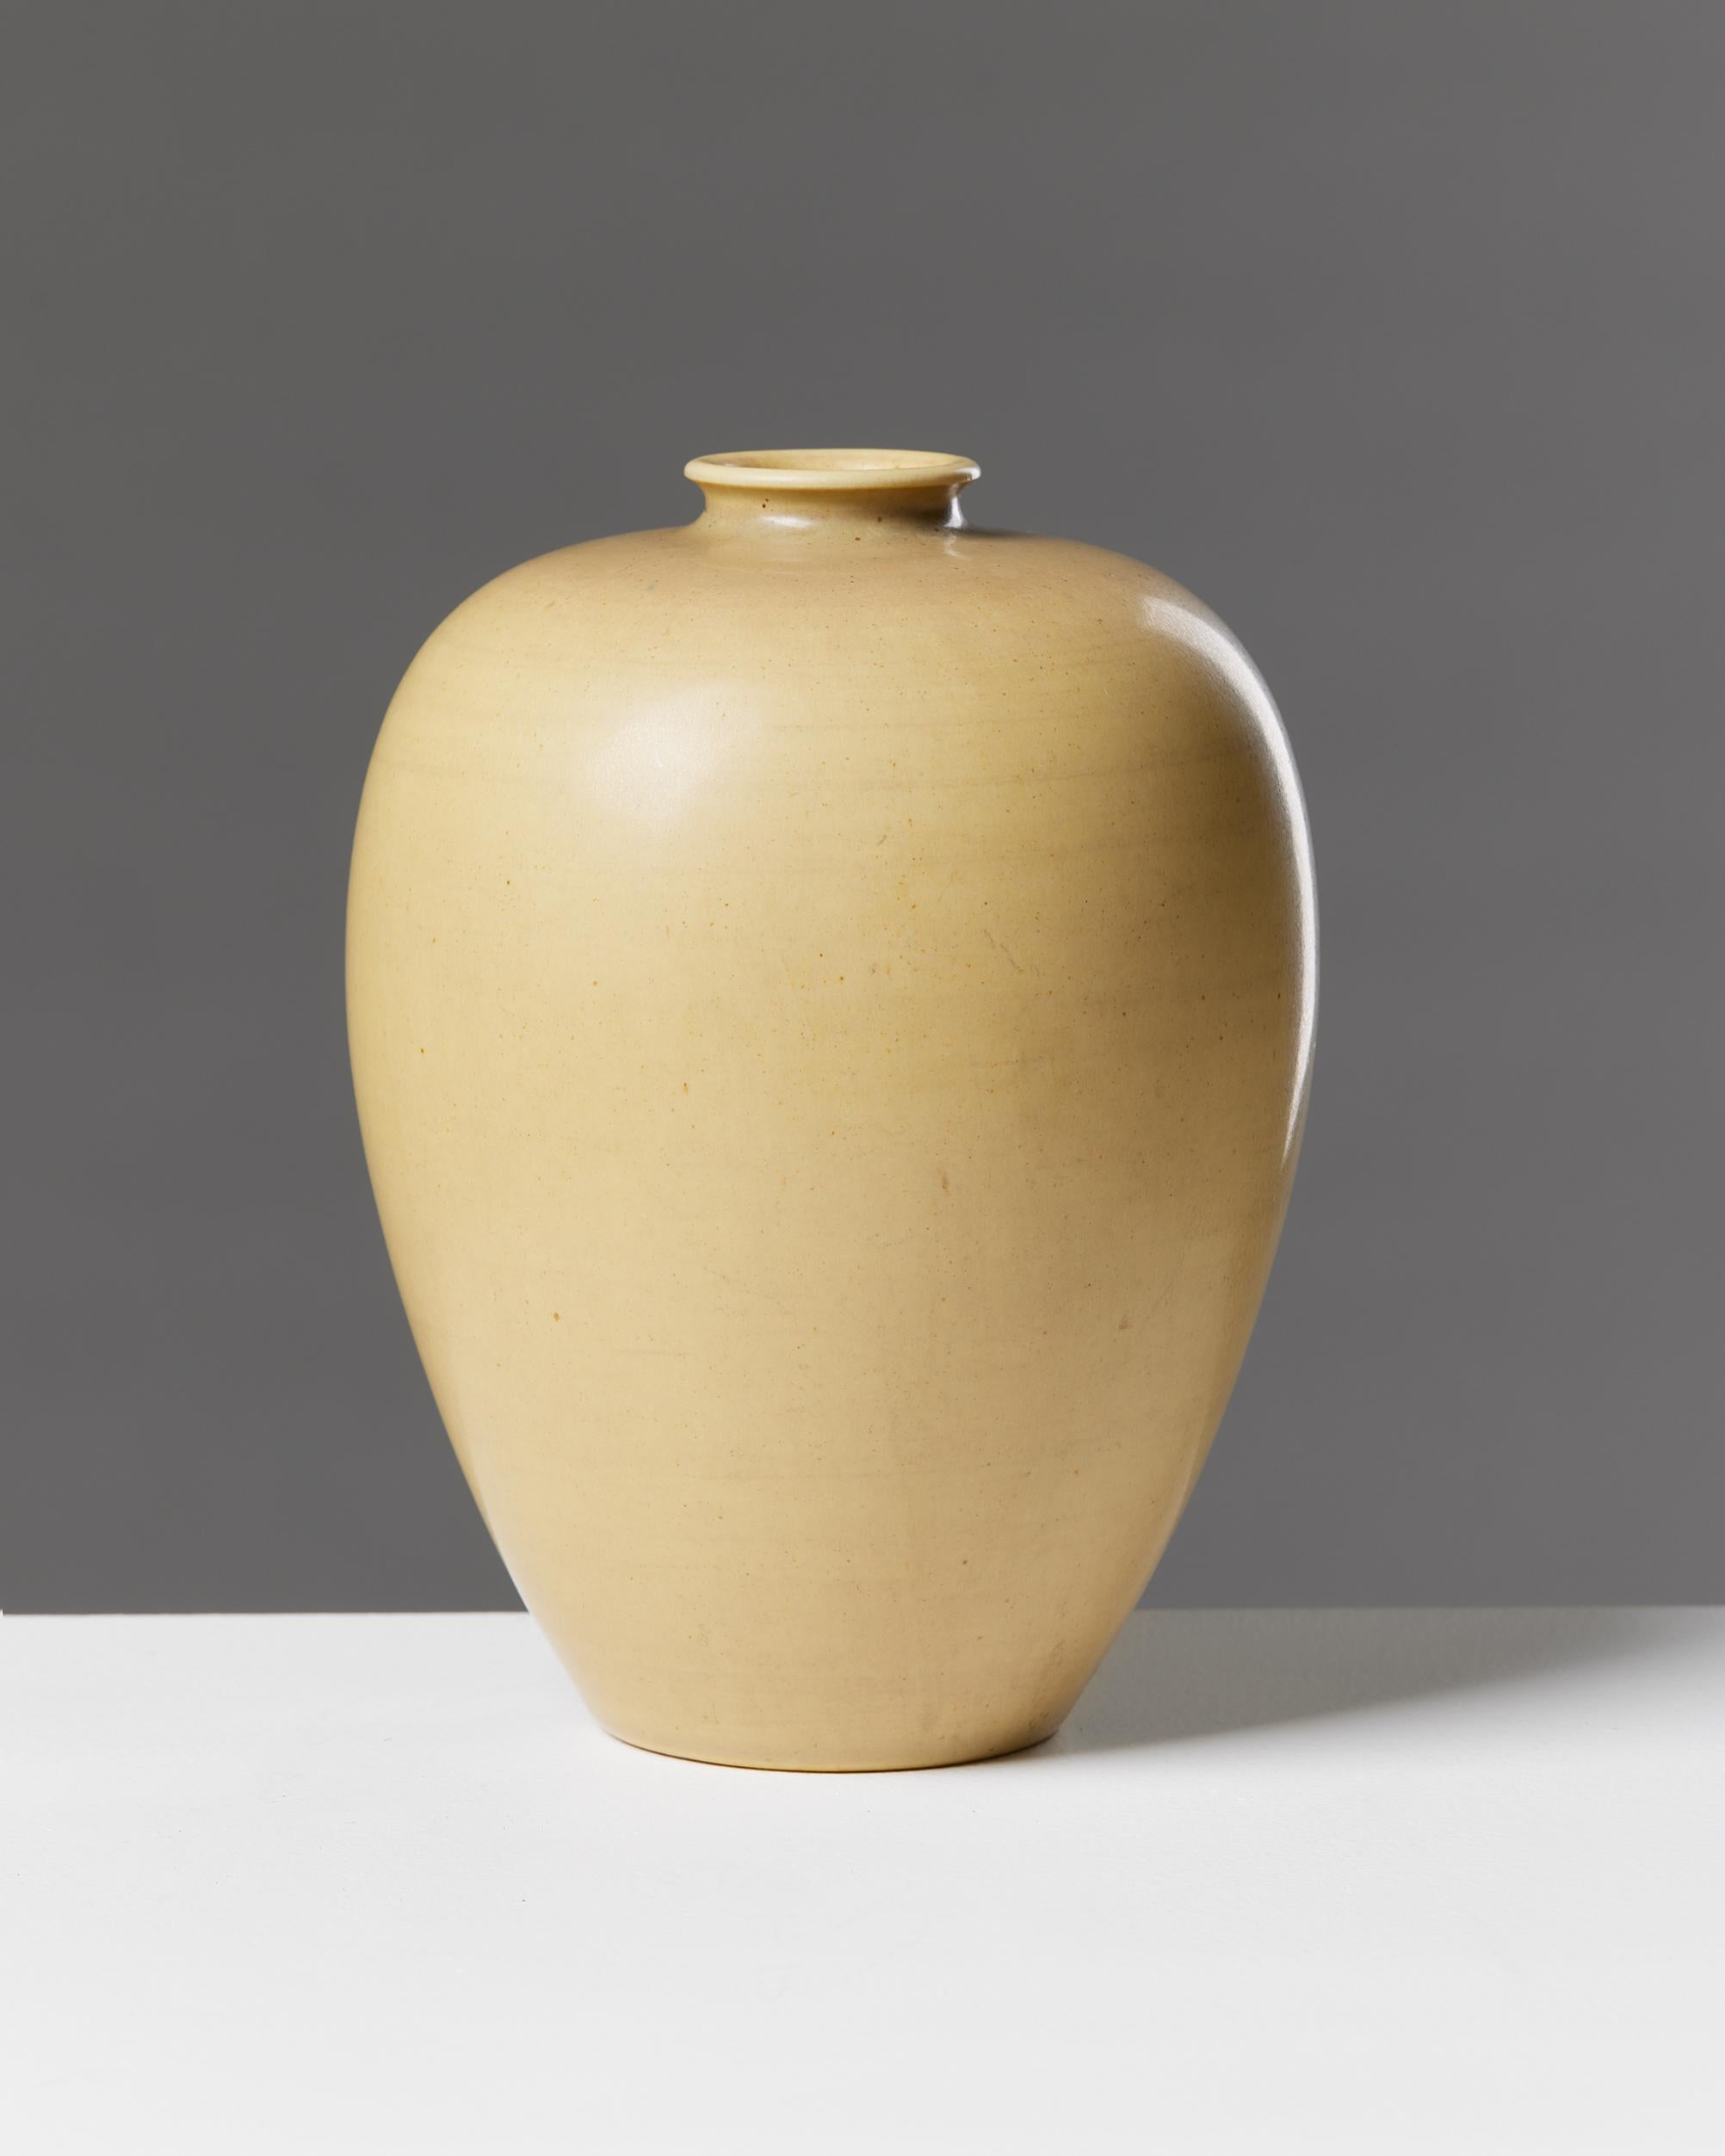 Vase, entworfen von Erich und Ingrid Triller für Tobo, Schweden, 1950er Jahre.

Unterschrieben.